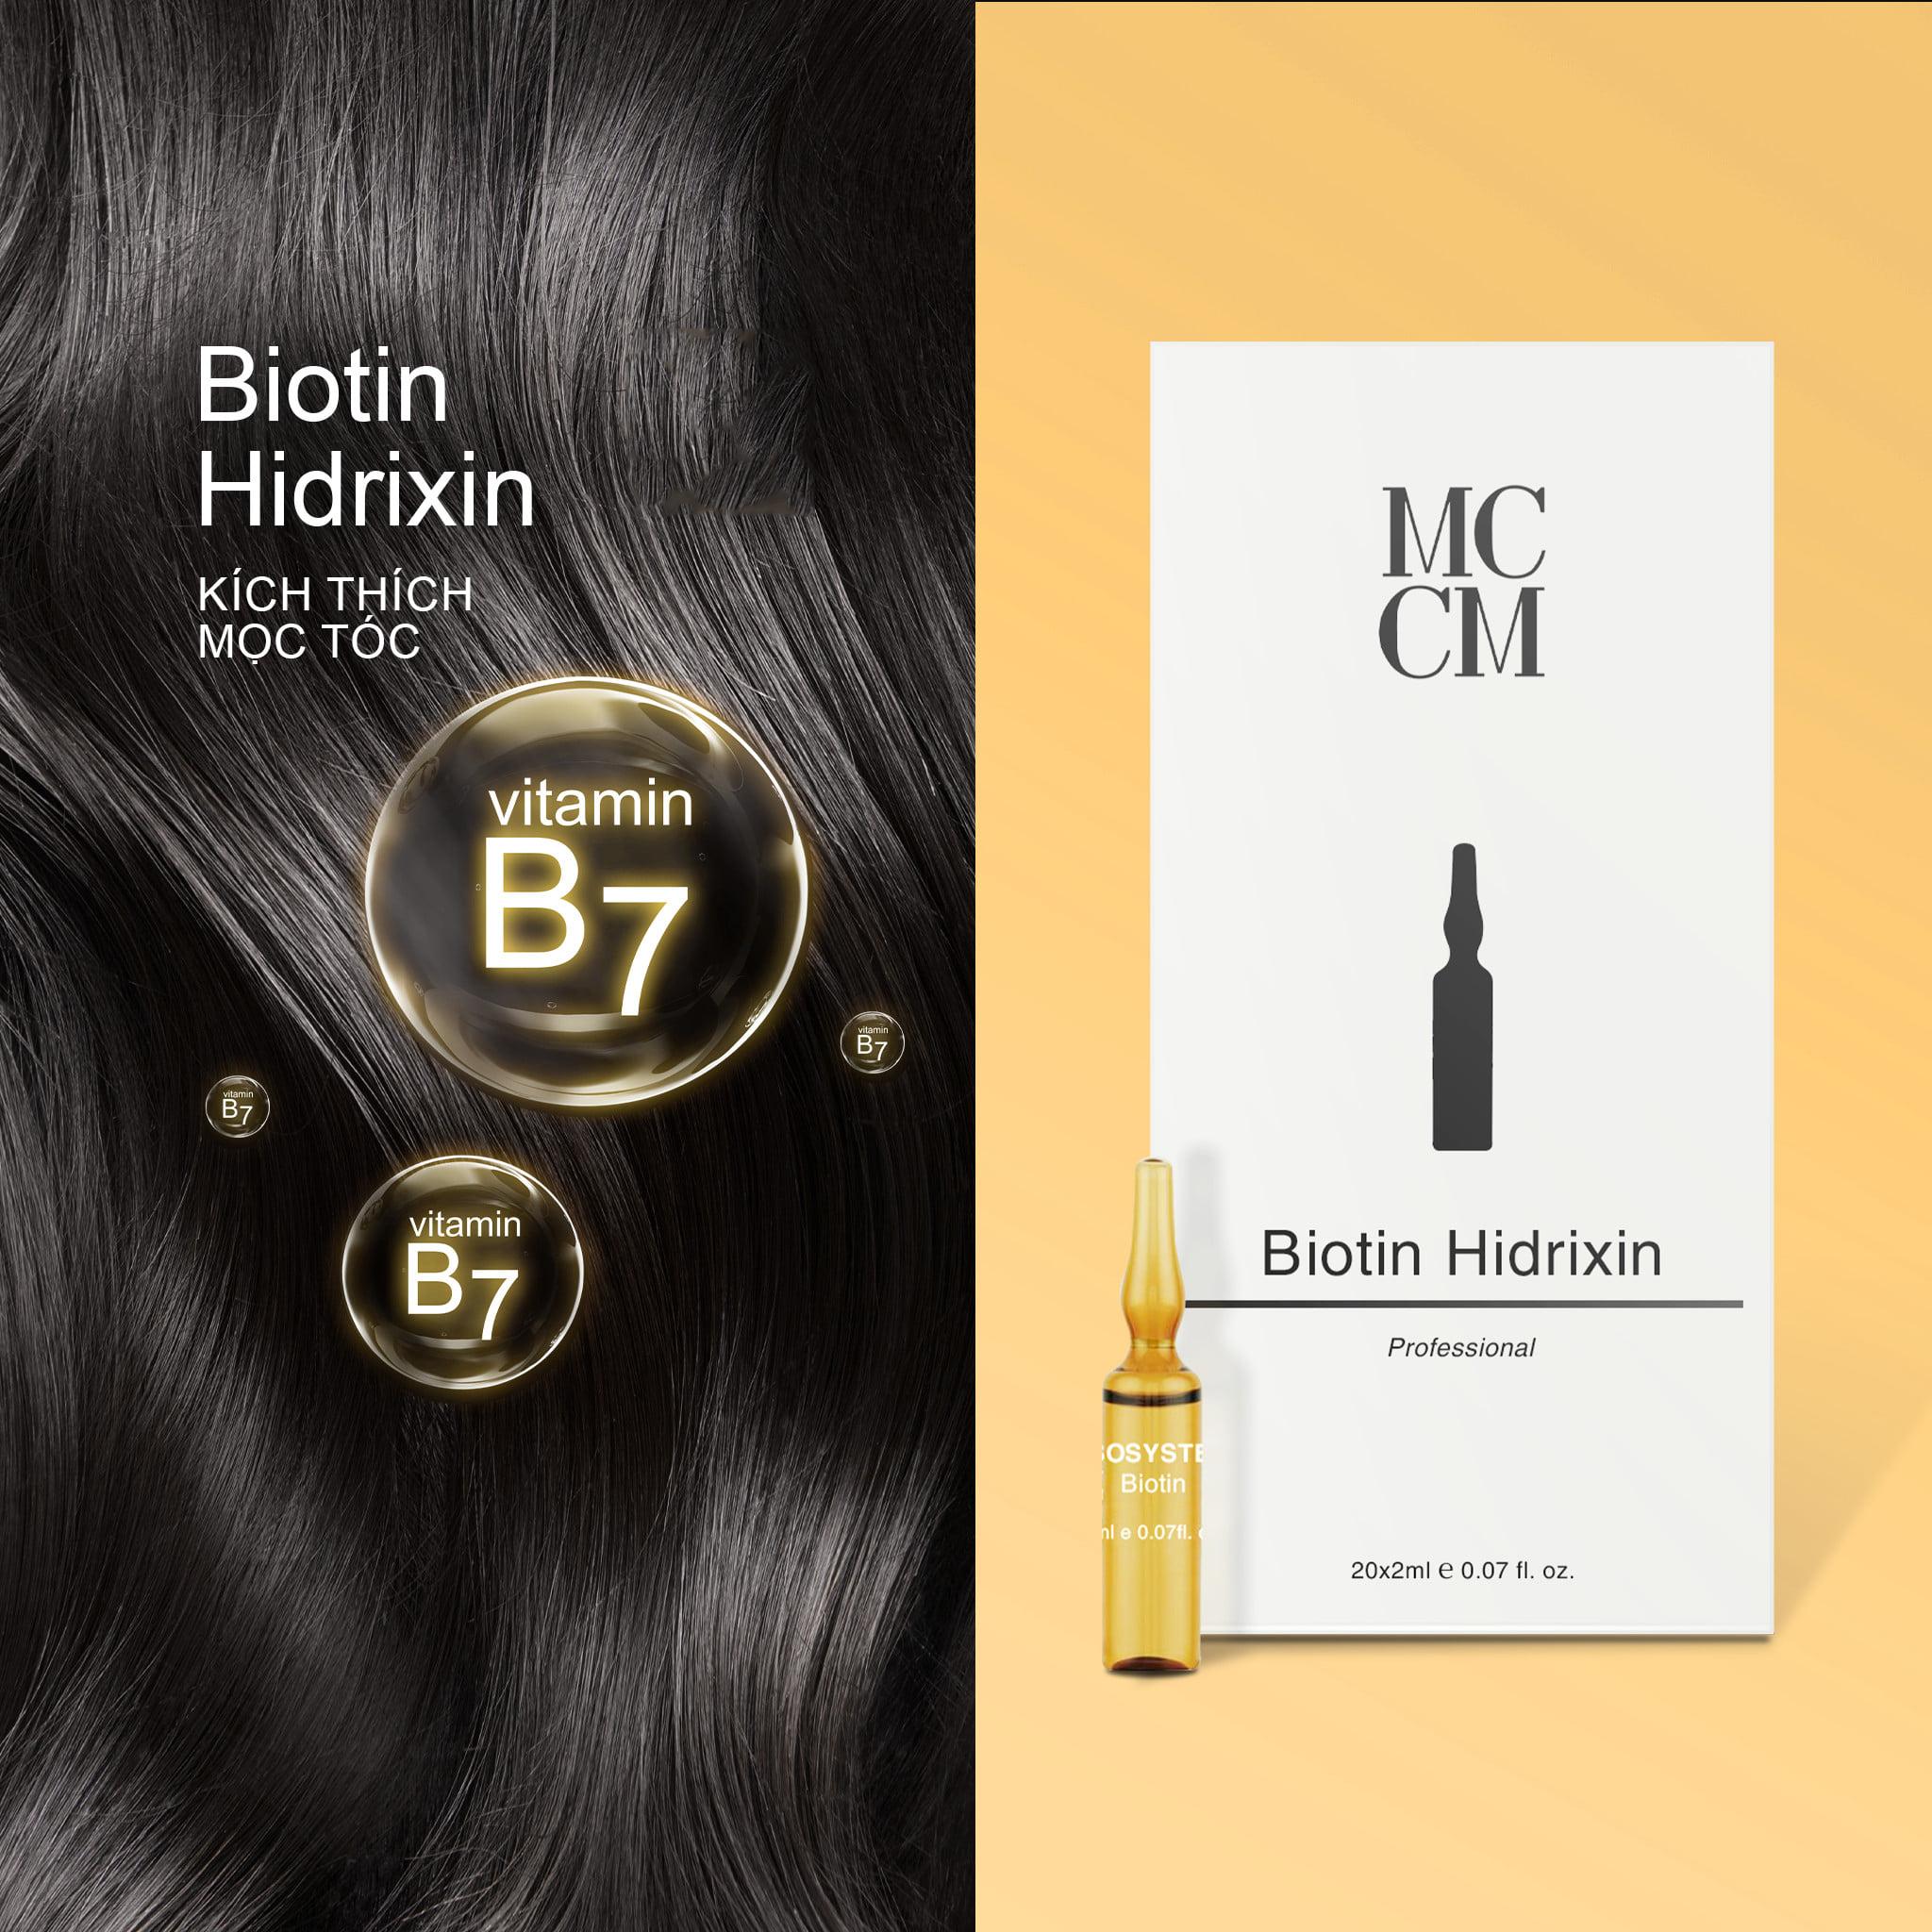 Tinh chất kích thích mọc tóc MCCM Biotin Hidrixin